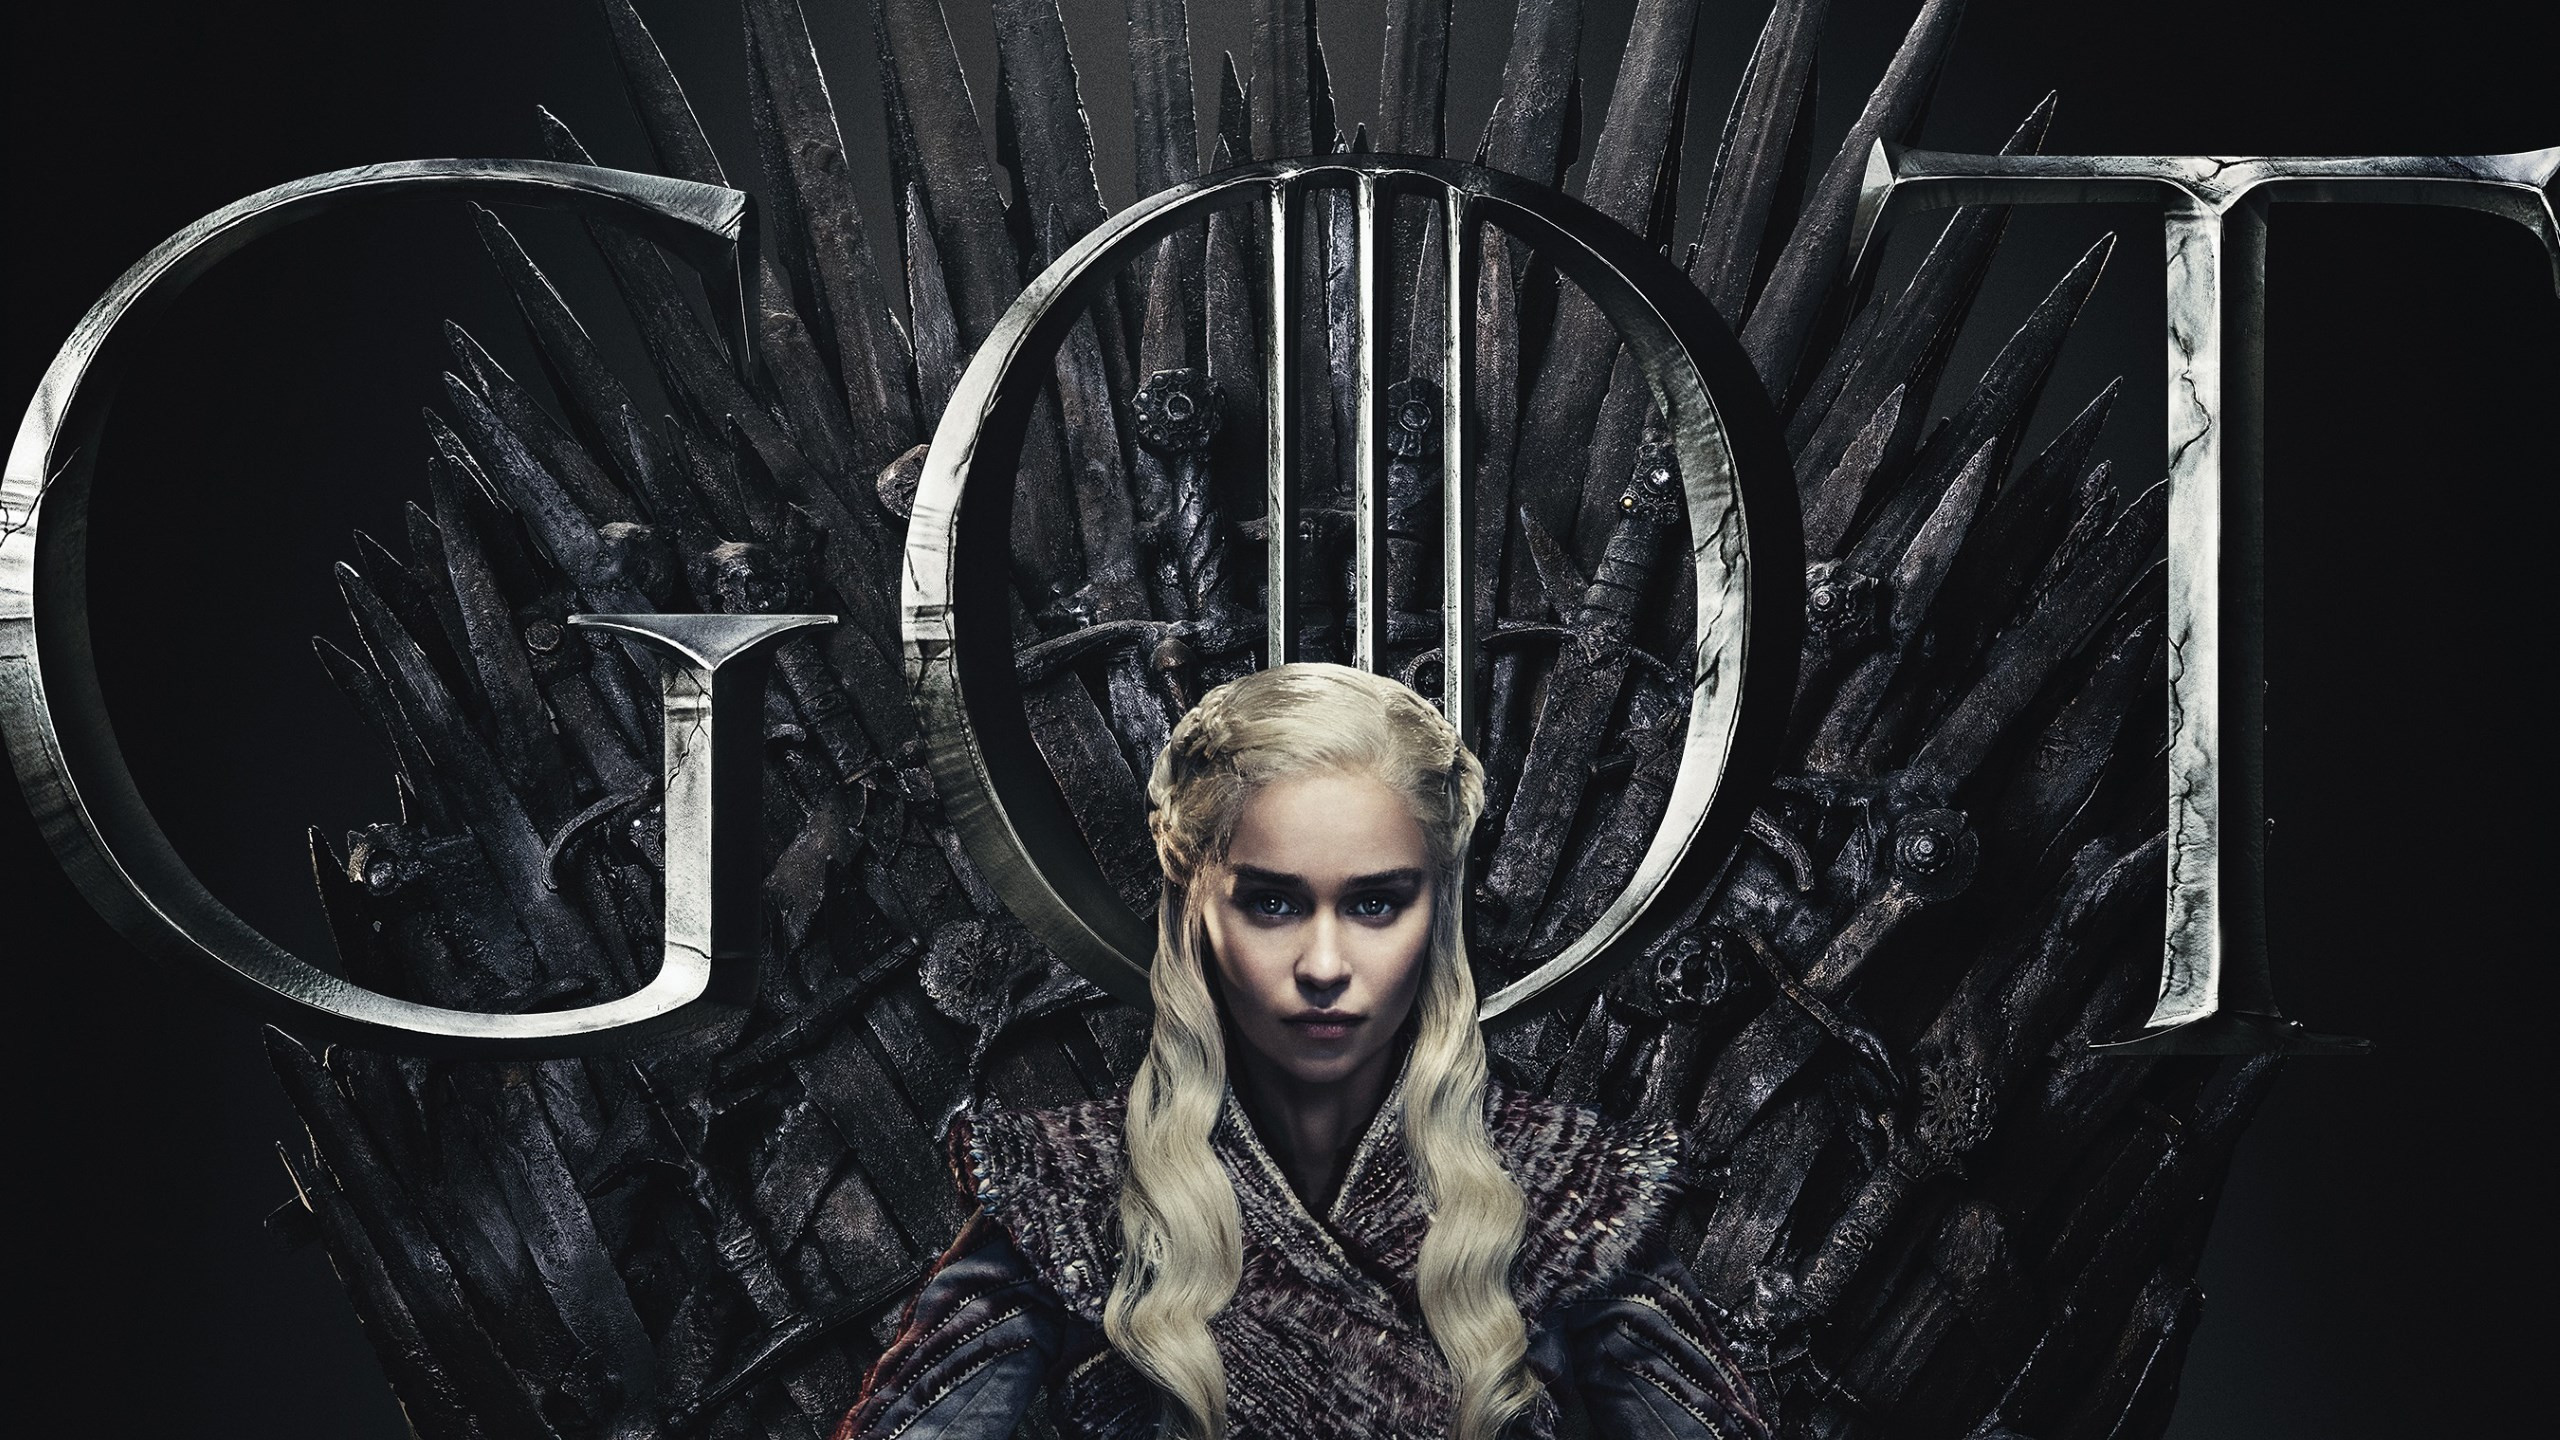 GOT 8 Daenerys Targaryen poster wallpaper 2560x1440